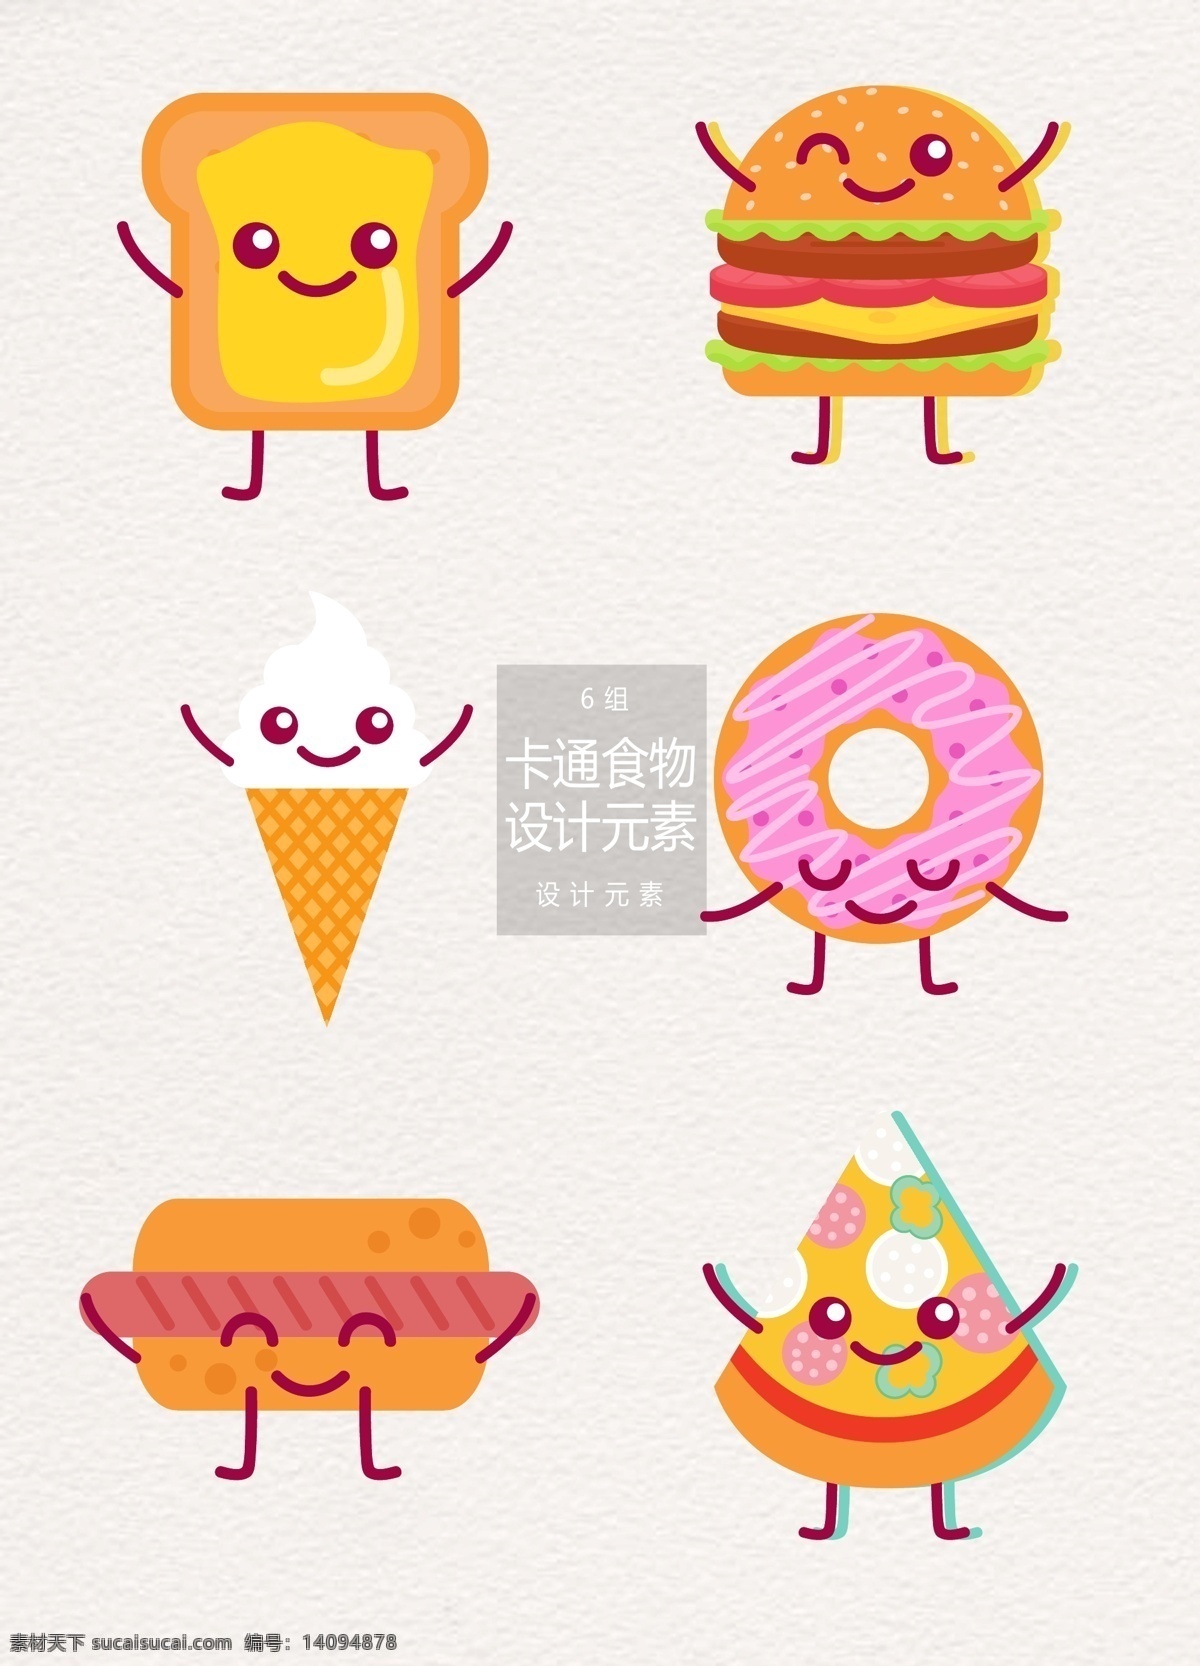 卡通 食物 元素 面包 冰淇淋 披萨 汉堡 设计元素 卡通食物 热狗 甜甜圈